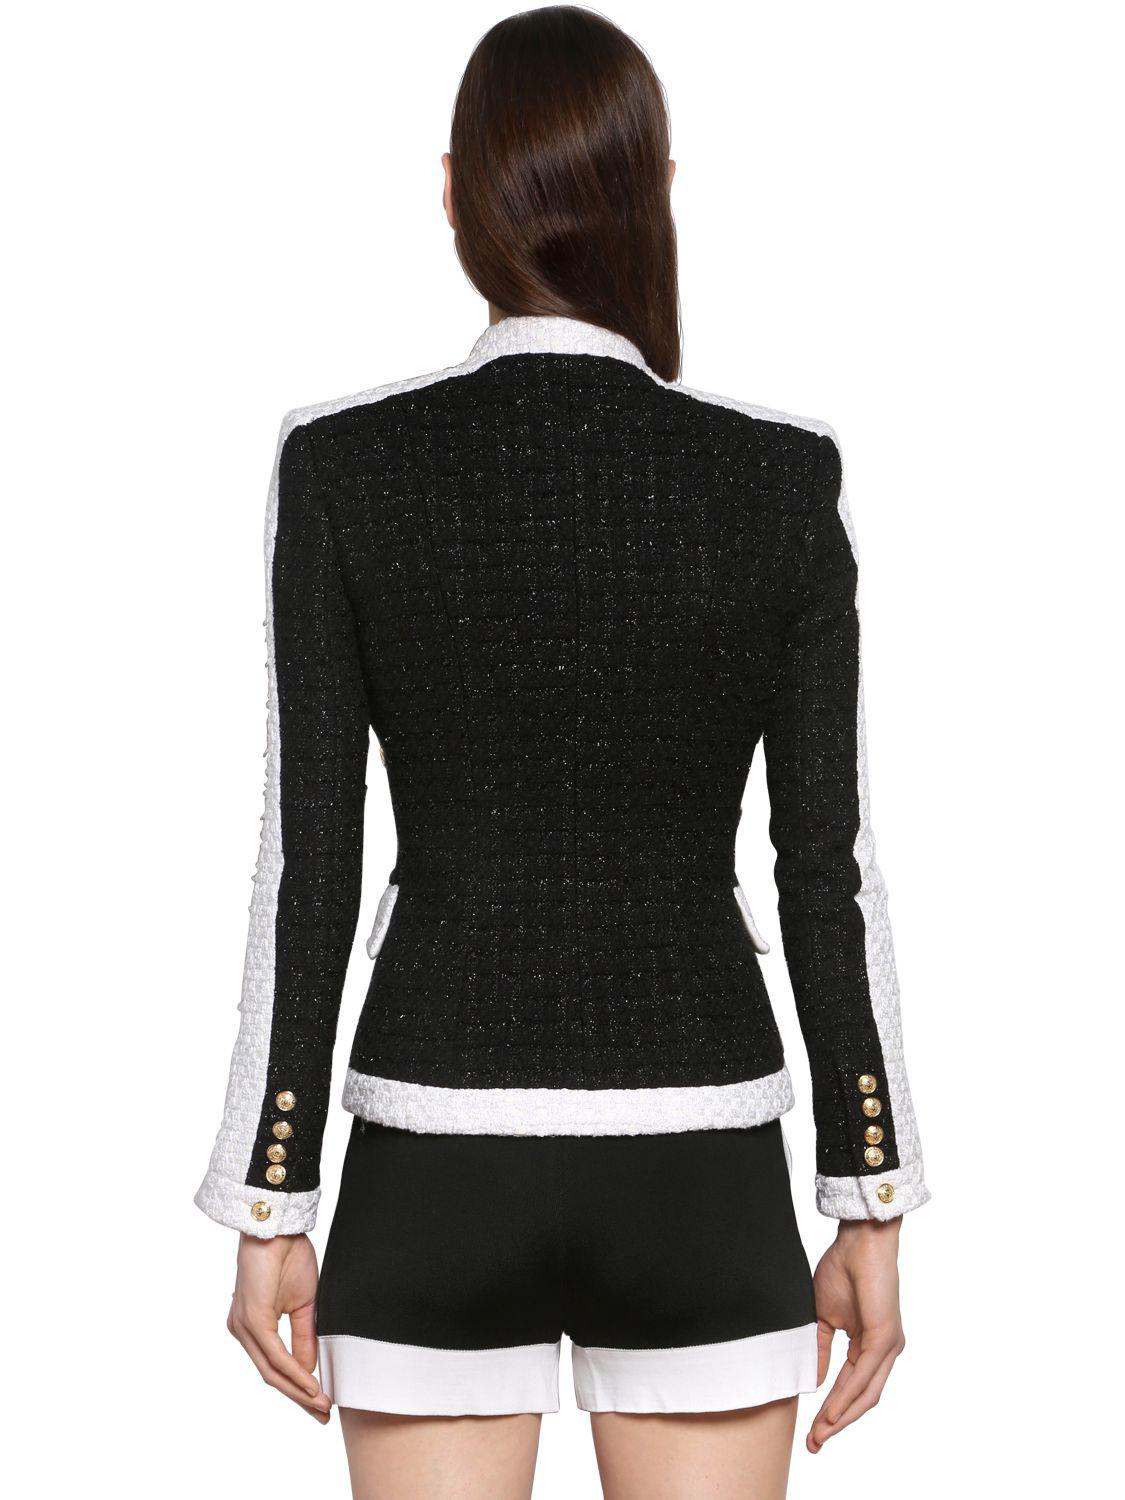 Balmain Lurex Tweed Blazer W/ Gold Buttons in Black/White (Black) - Lyst